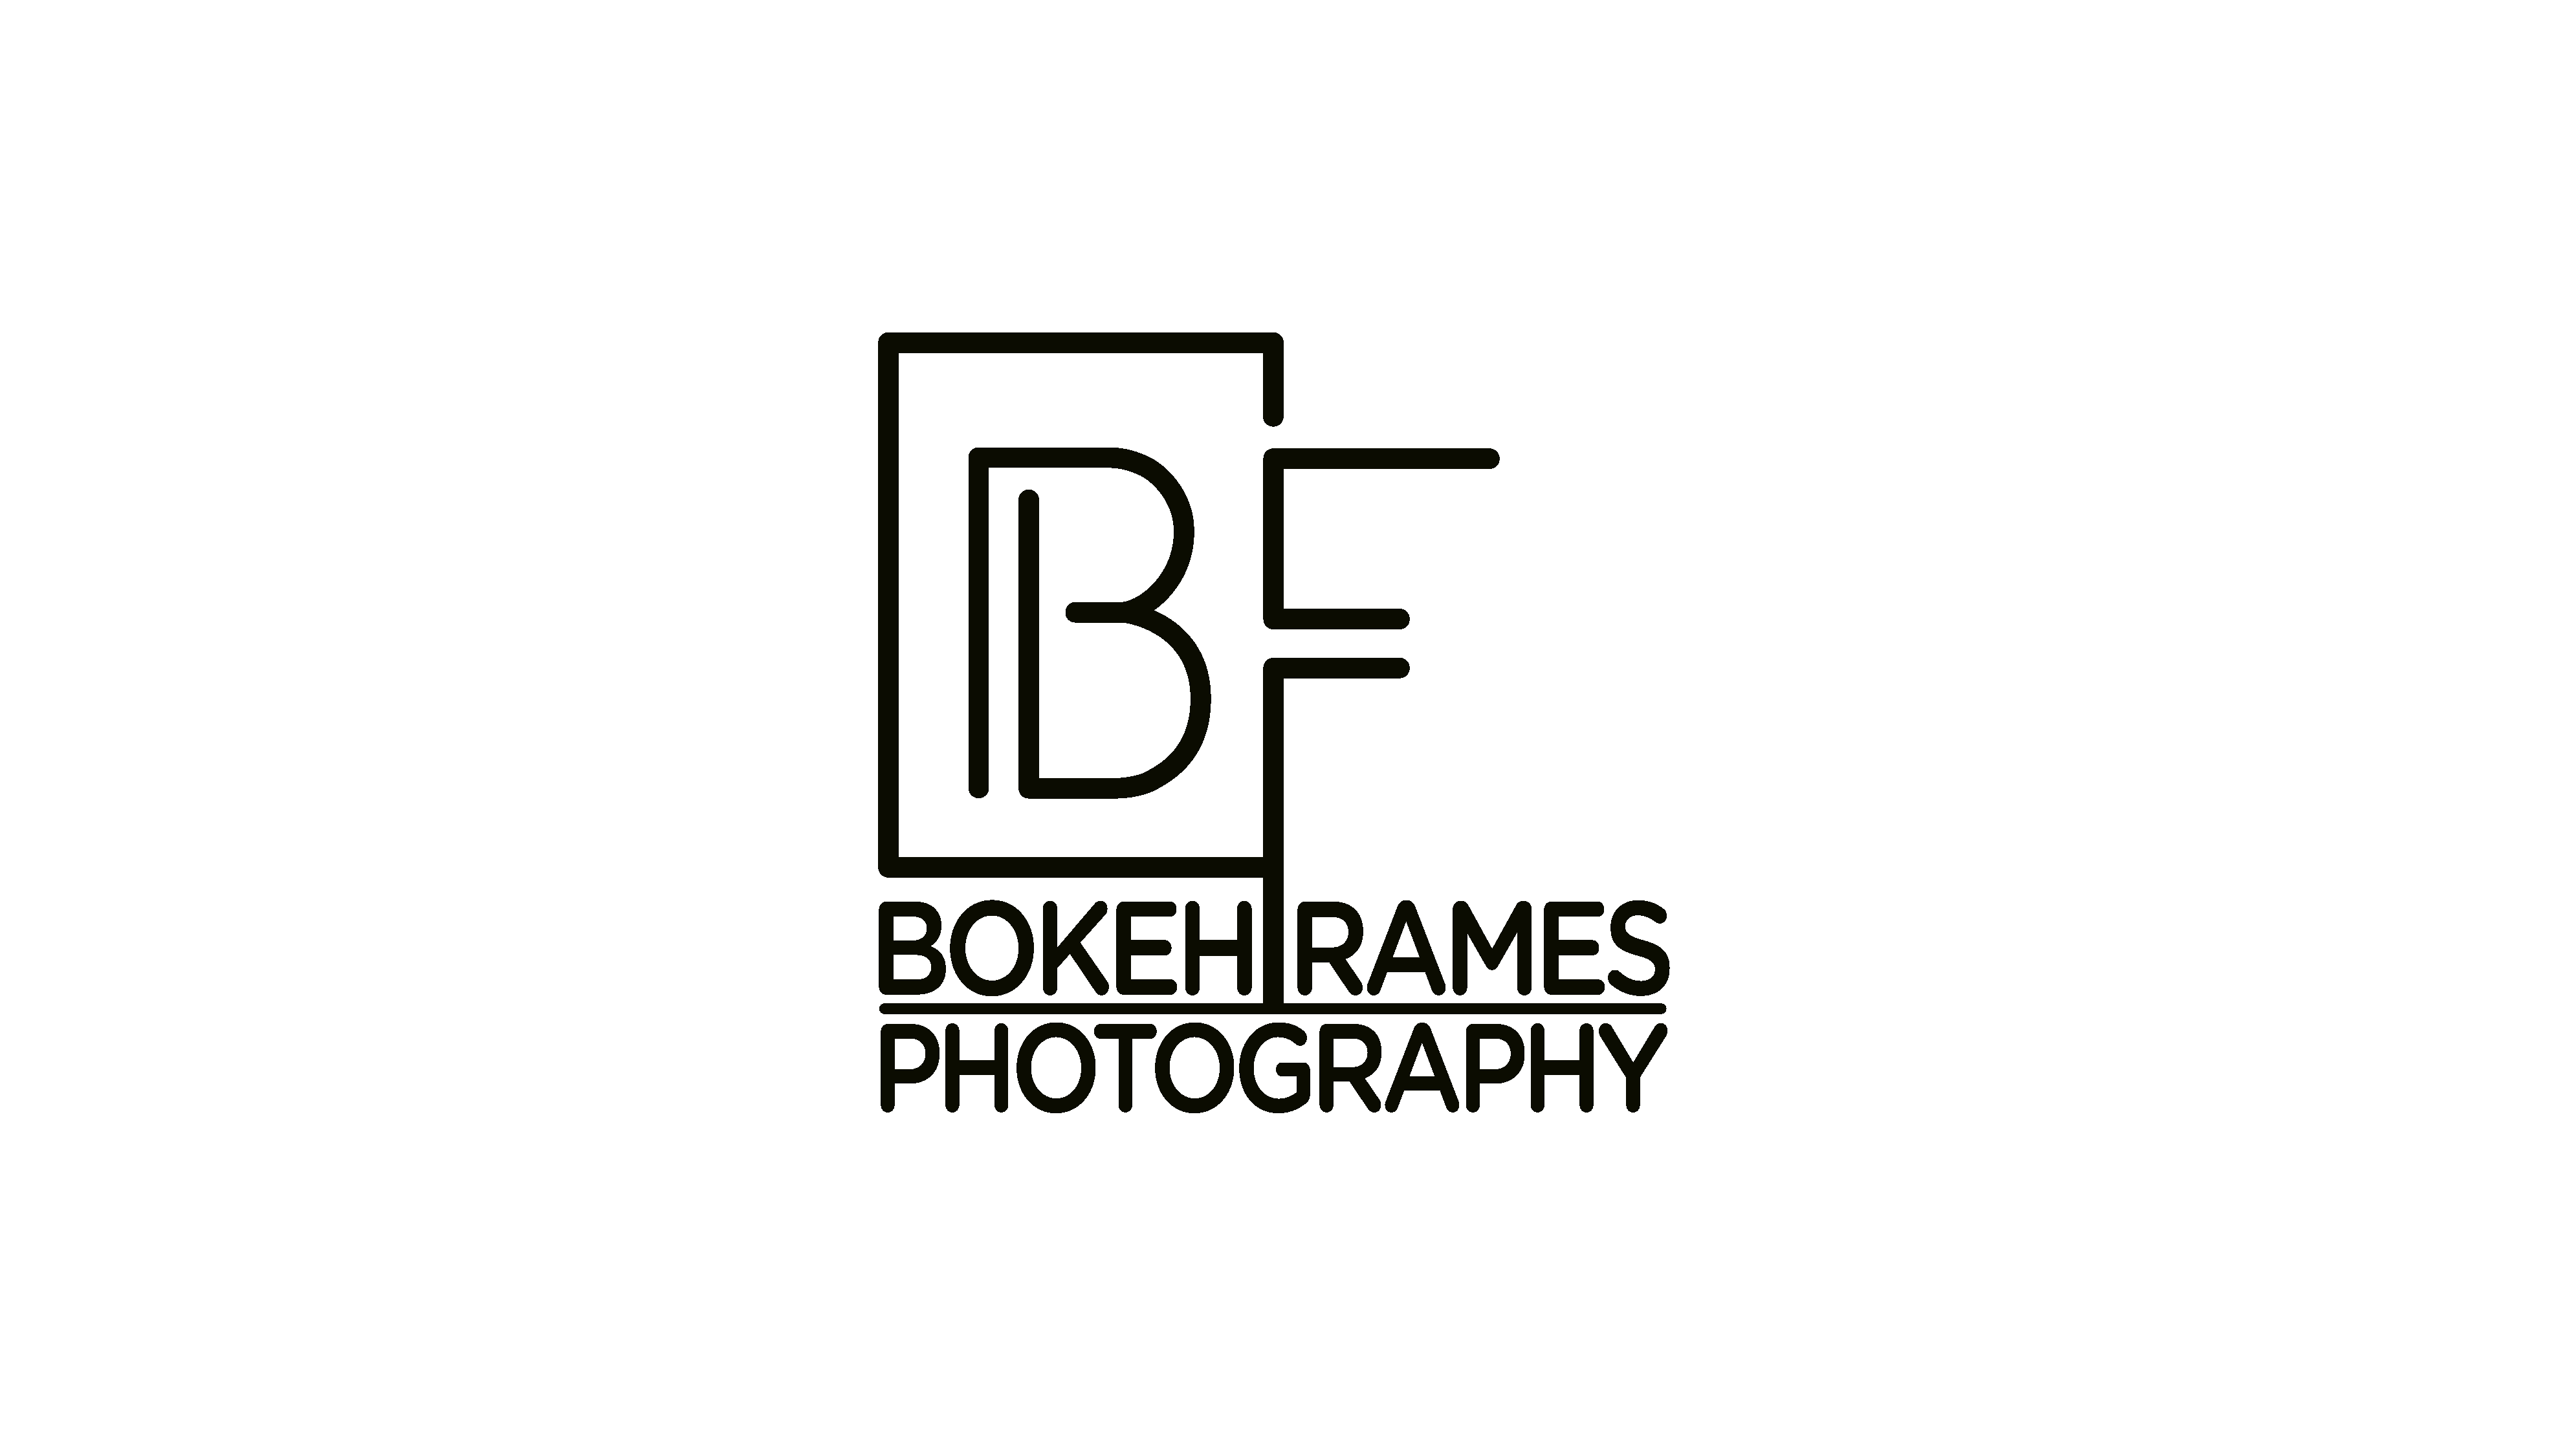 BOKEHFRAMES PHOTOGRAPHY